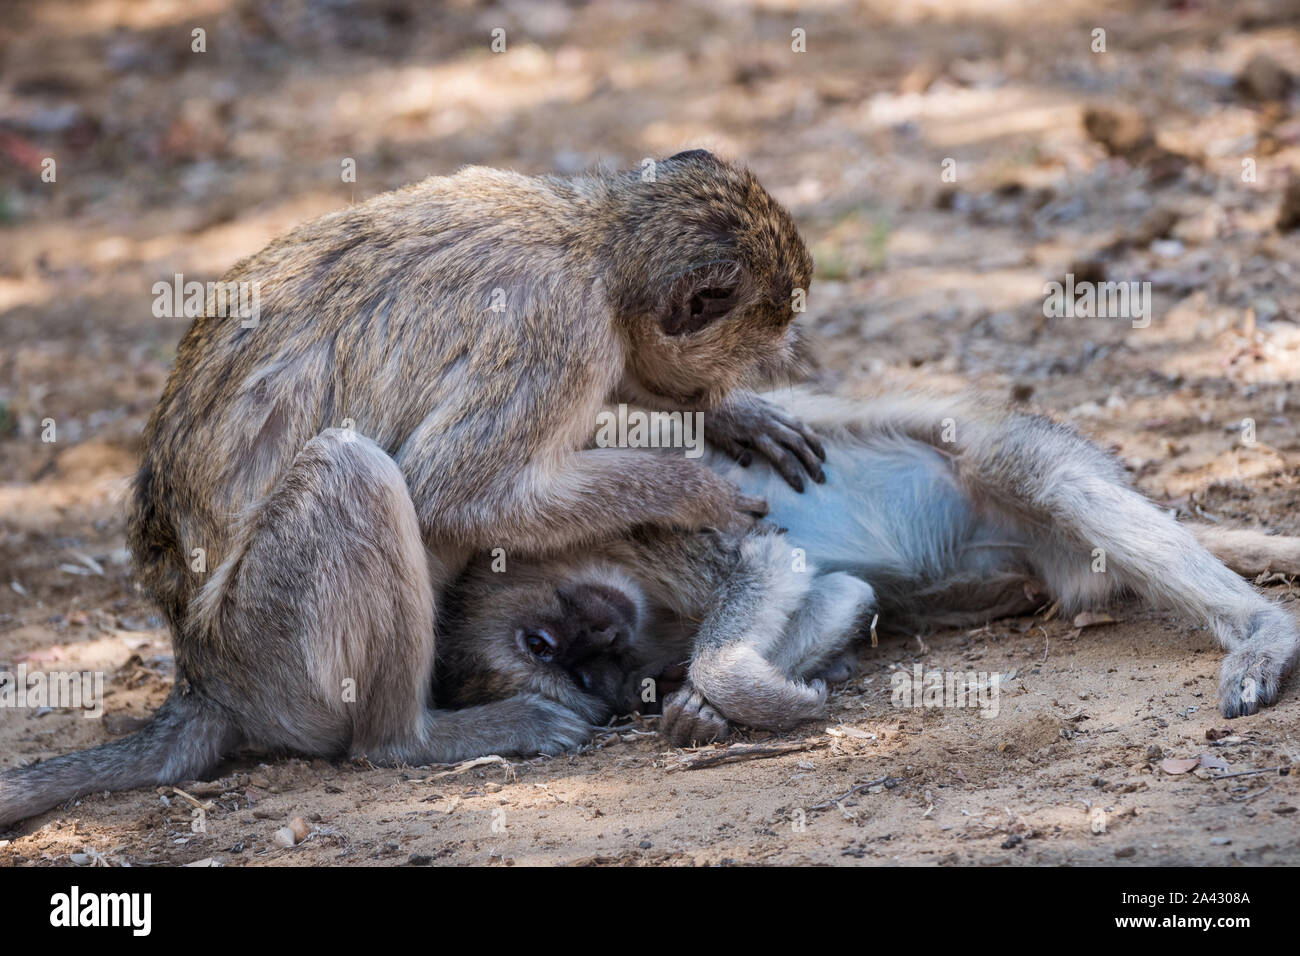 Shameful monkey stock image. Image of cleaning, africa - 87532525